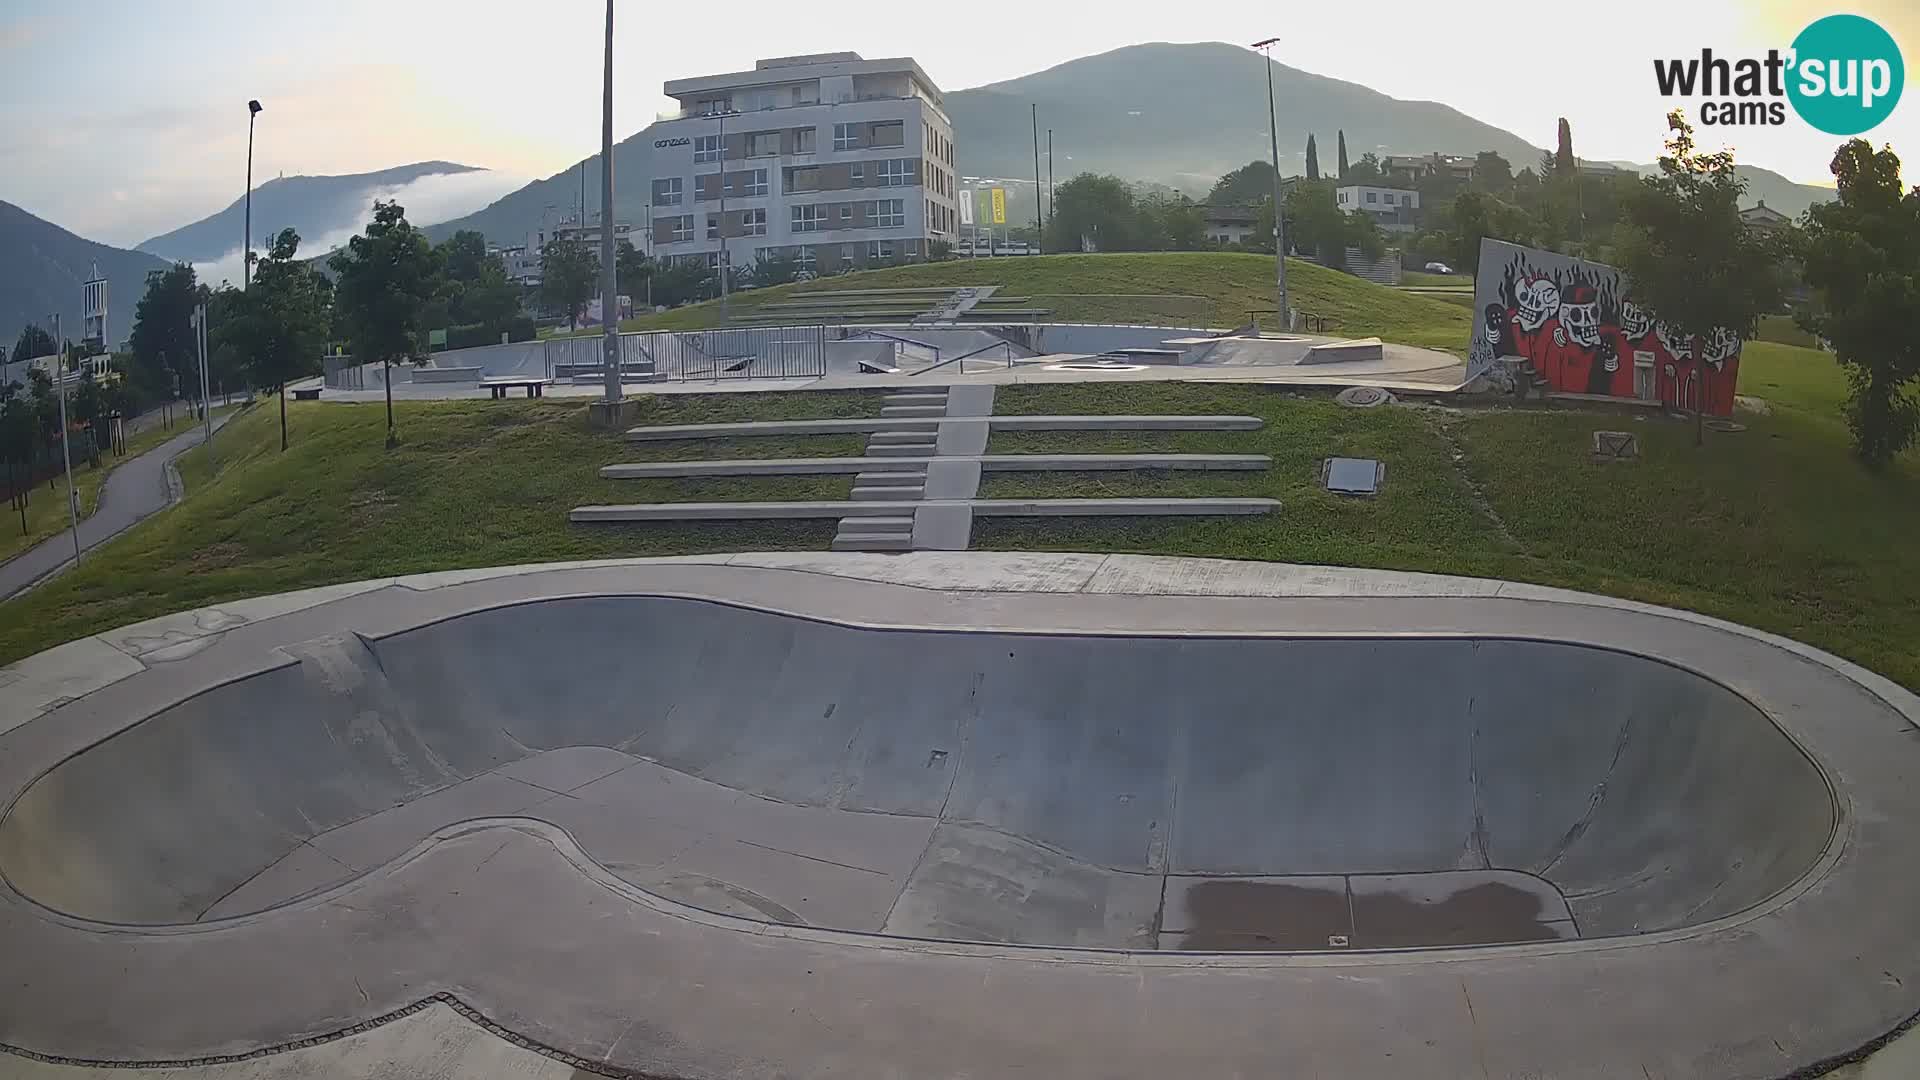 Skate park web kamera Nova Gorica – Slovenia